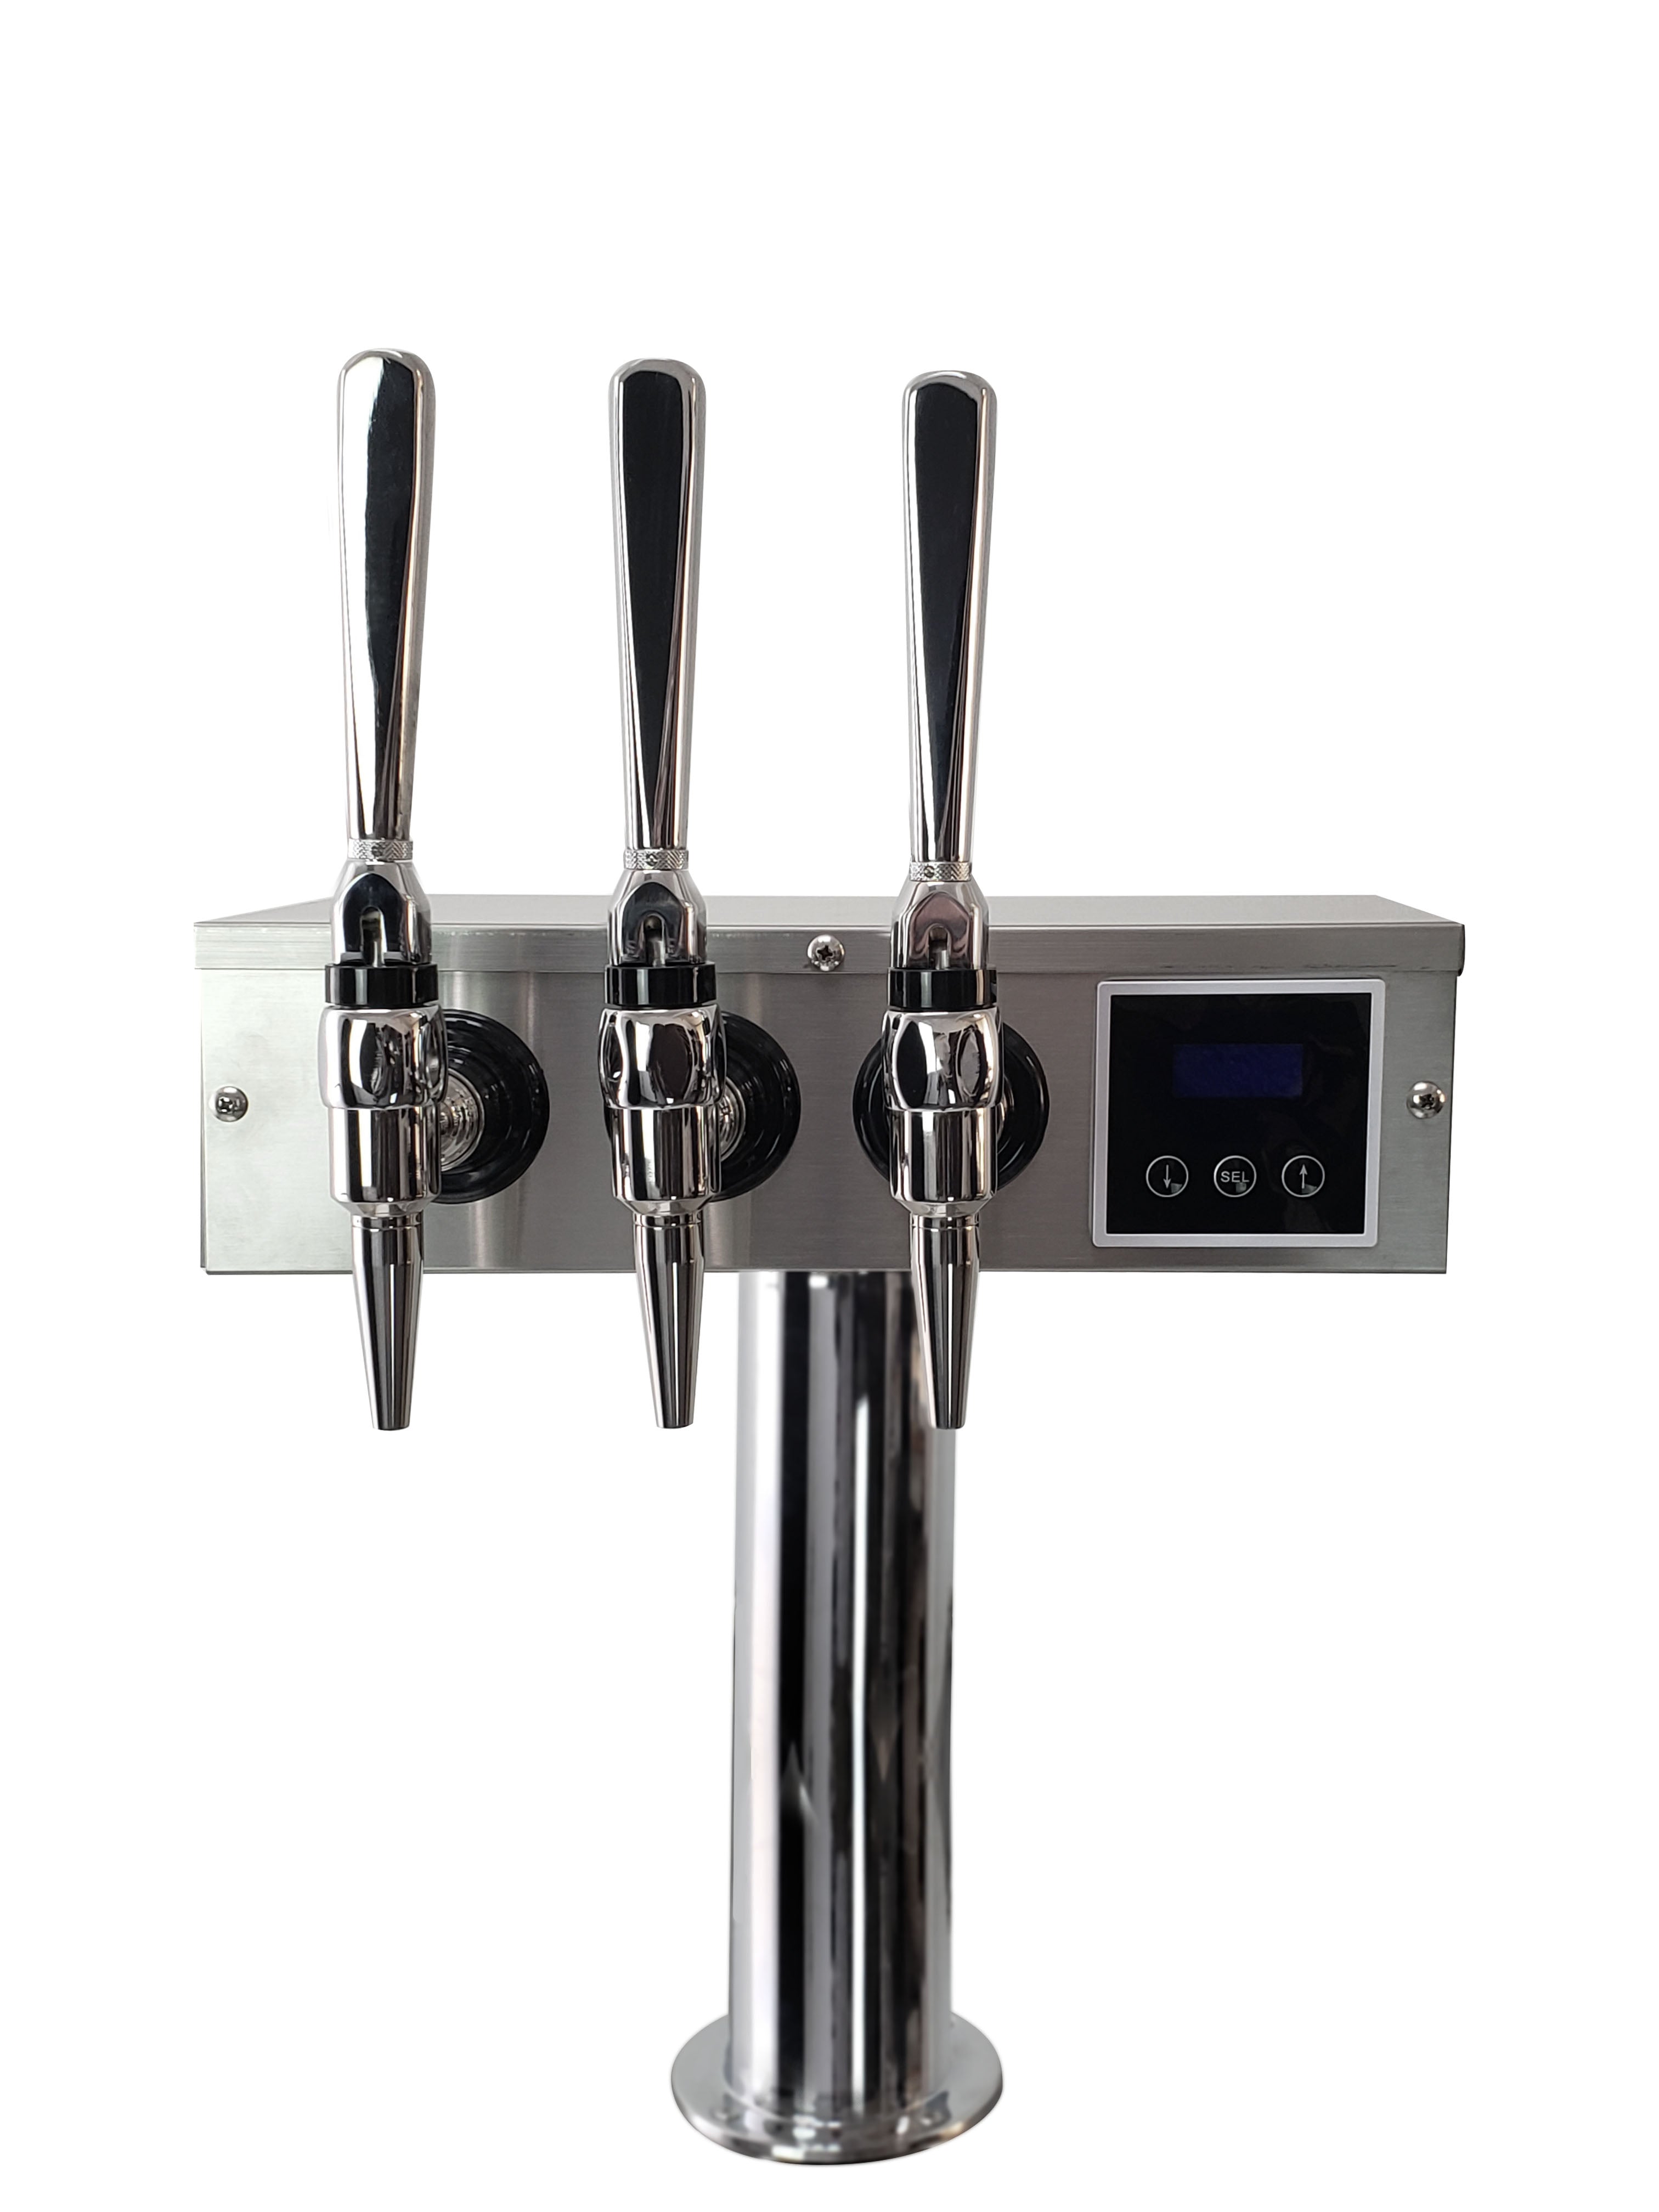 Kegco XCK-HDT-3S &reg; Triple Faucet Commercial Kegerator Hot Draft &reg; Tap Coffee Keg Dispenser - Stainless Steel